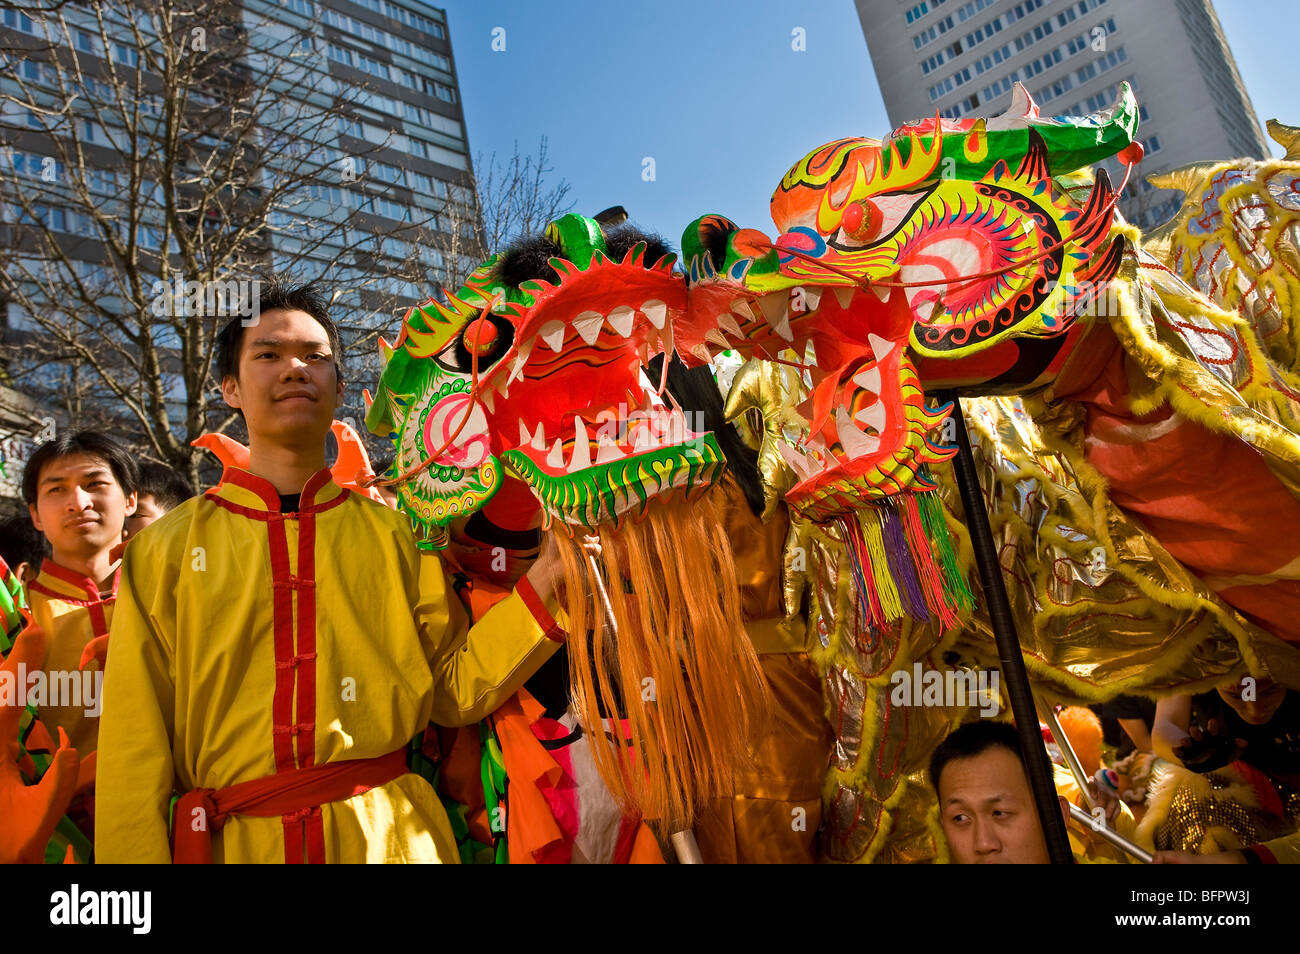 CHINES NEW YEAR, CHINATOWN, PARIS Stock Photo